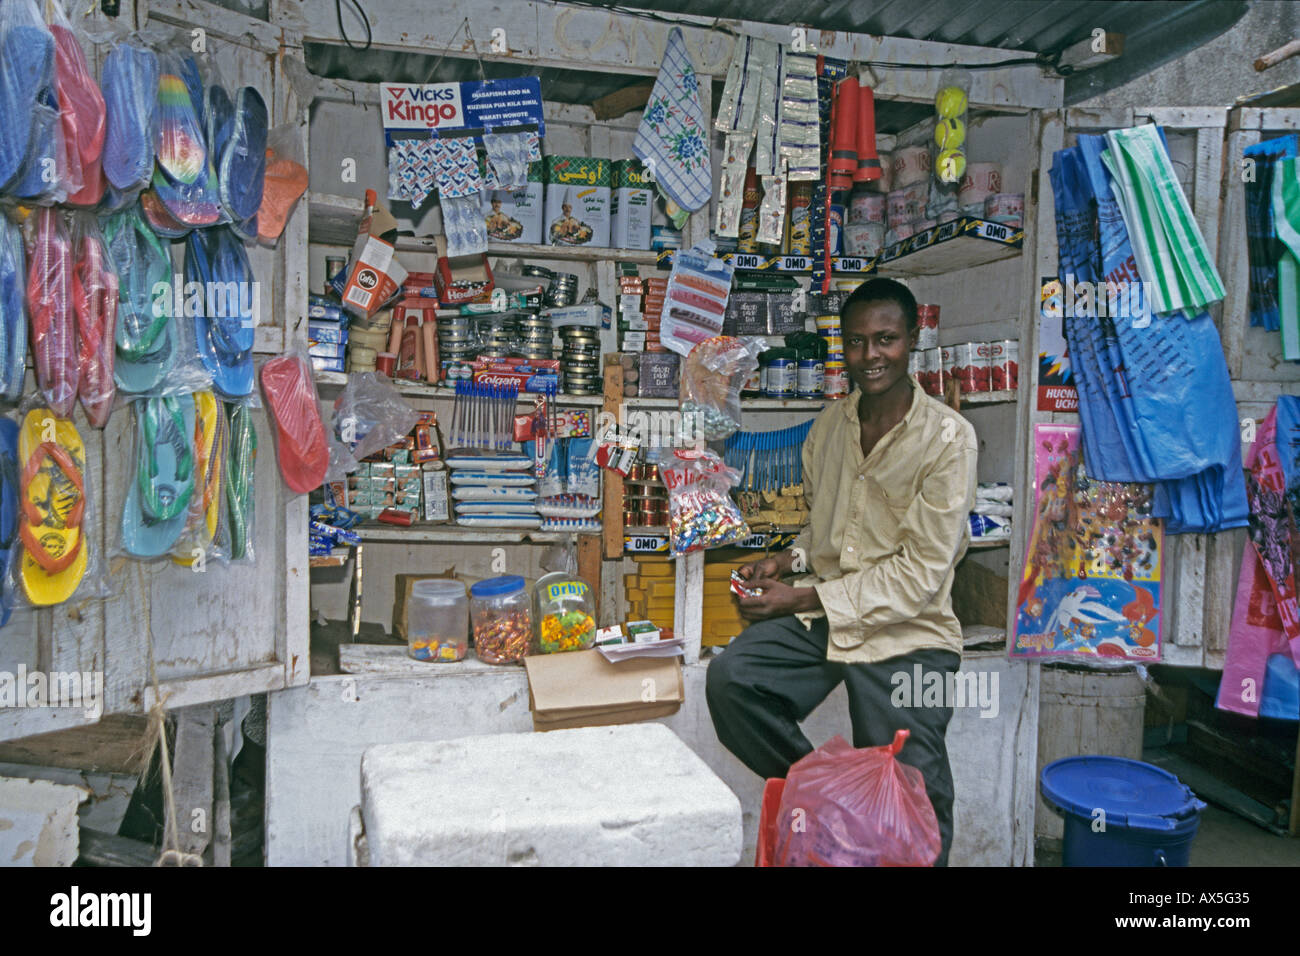 Young entrepreneur in his mobile kiosk, Moshi, Tanzania Stock Photo